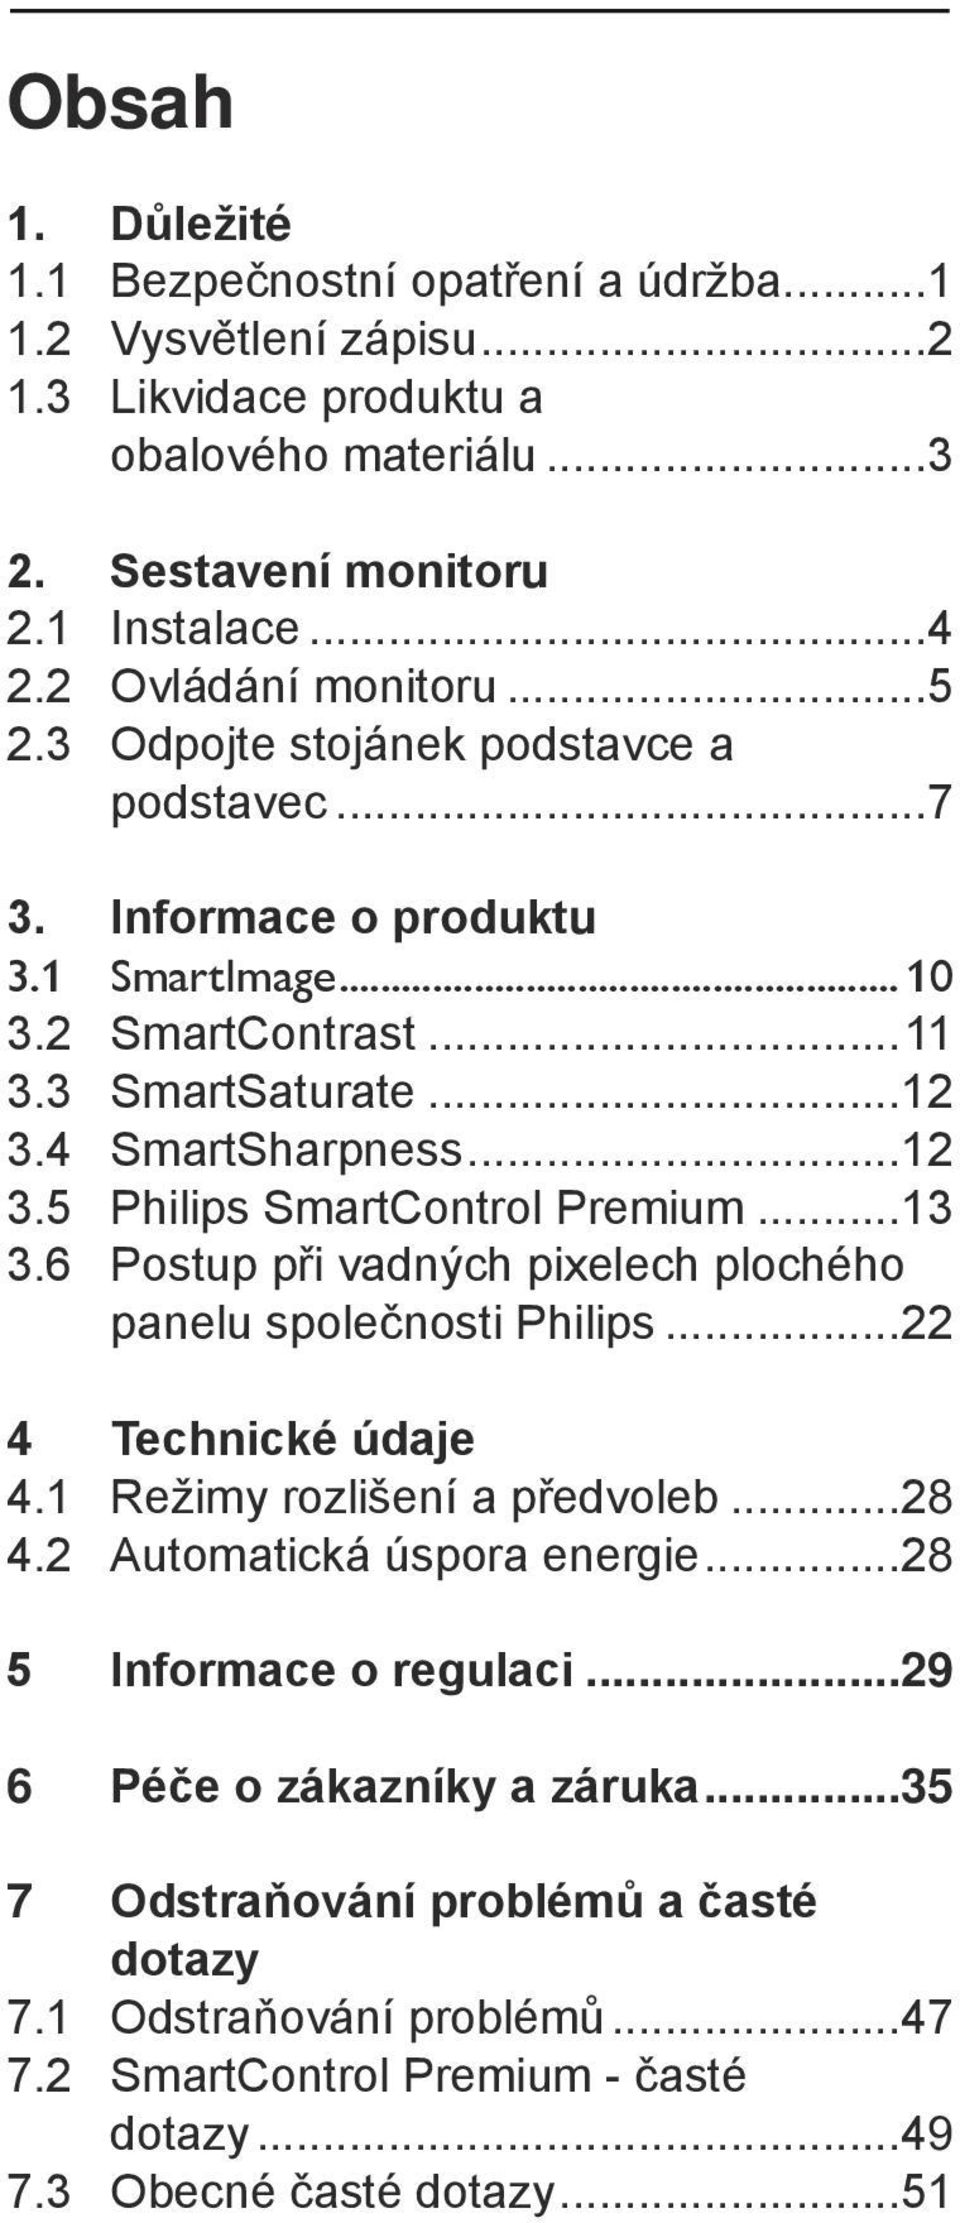 4 SmartSharpness...12 3.5 Philips SmartControl Premium...13 3.6 Postup při vadných pixelech plochého panelu společnosti Philips...22 4 Technické údaje 4.1 Režimy rozlišení a předvoleb...28 4.